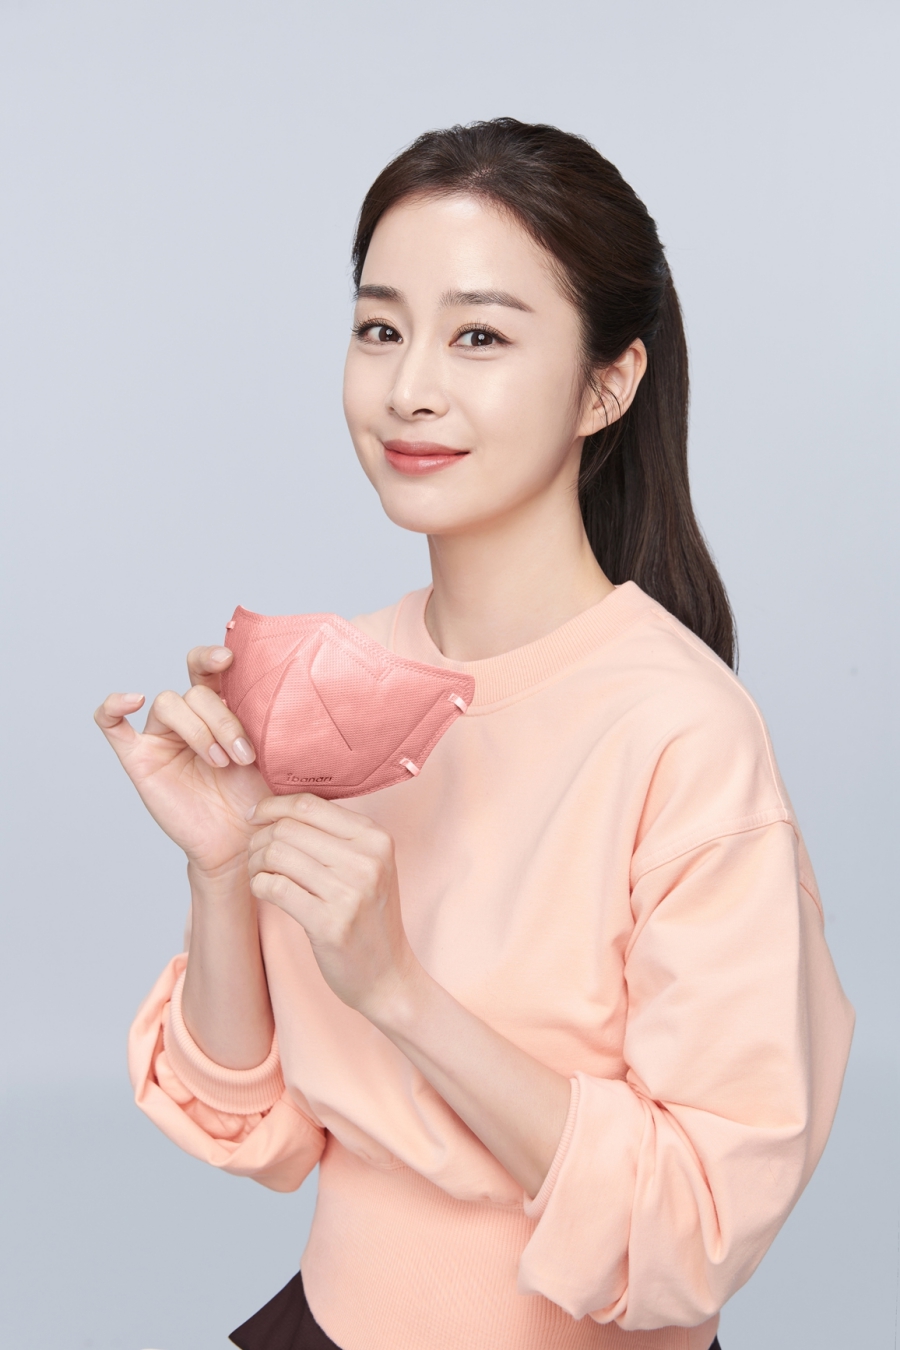 Chosun Online 朝鮮日報 キム テヒ 上品で優雅なイメージ マスク ブランドのcmモデルに